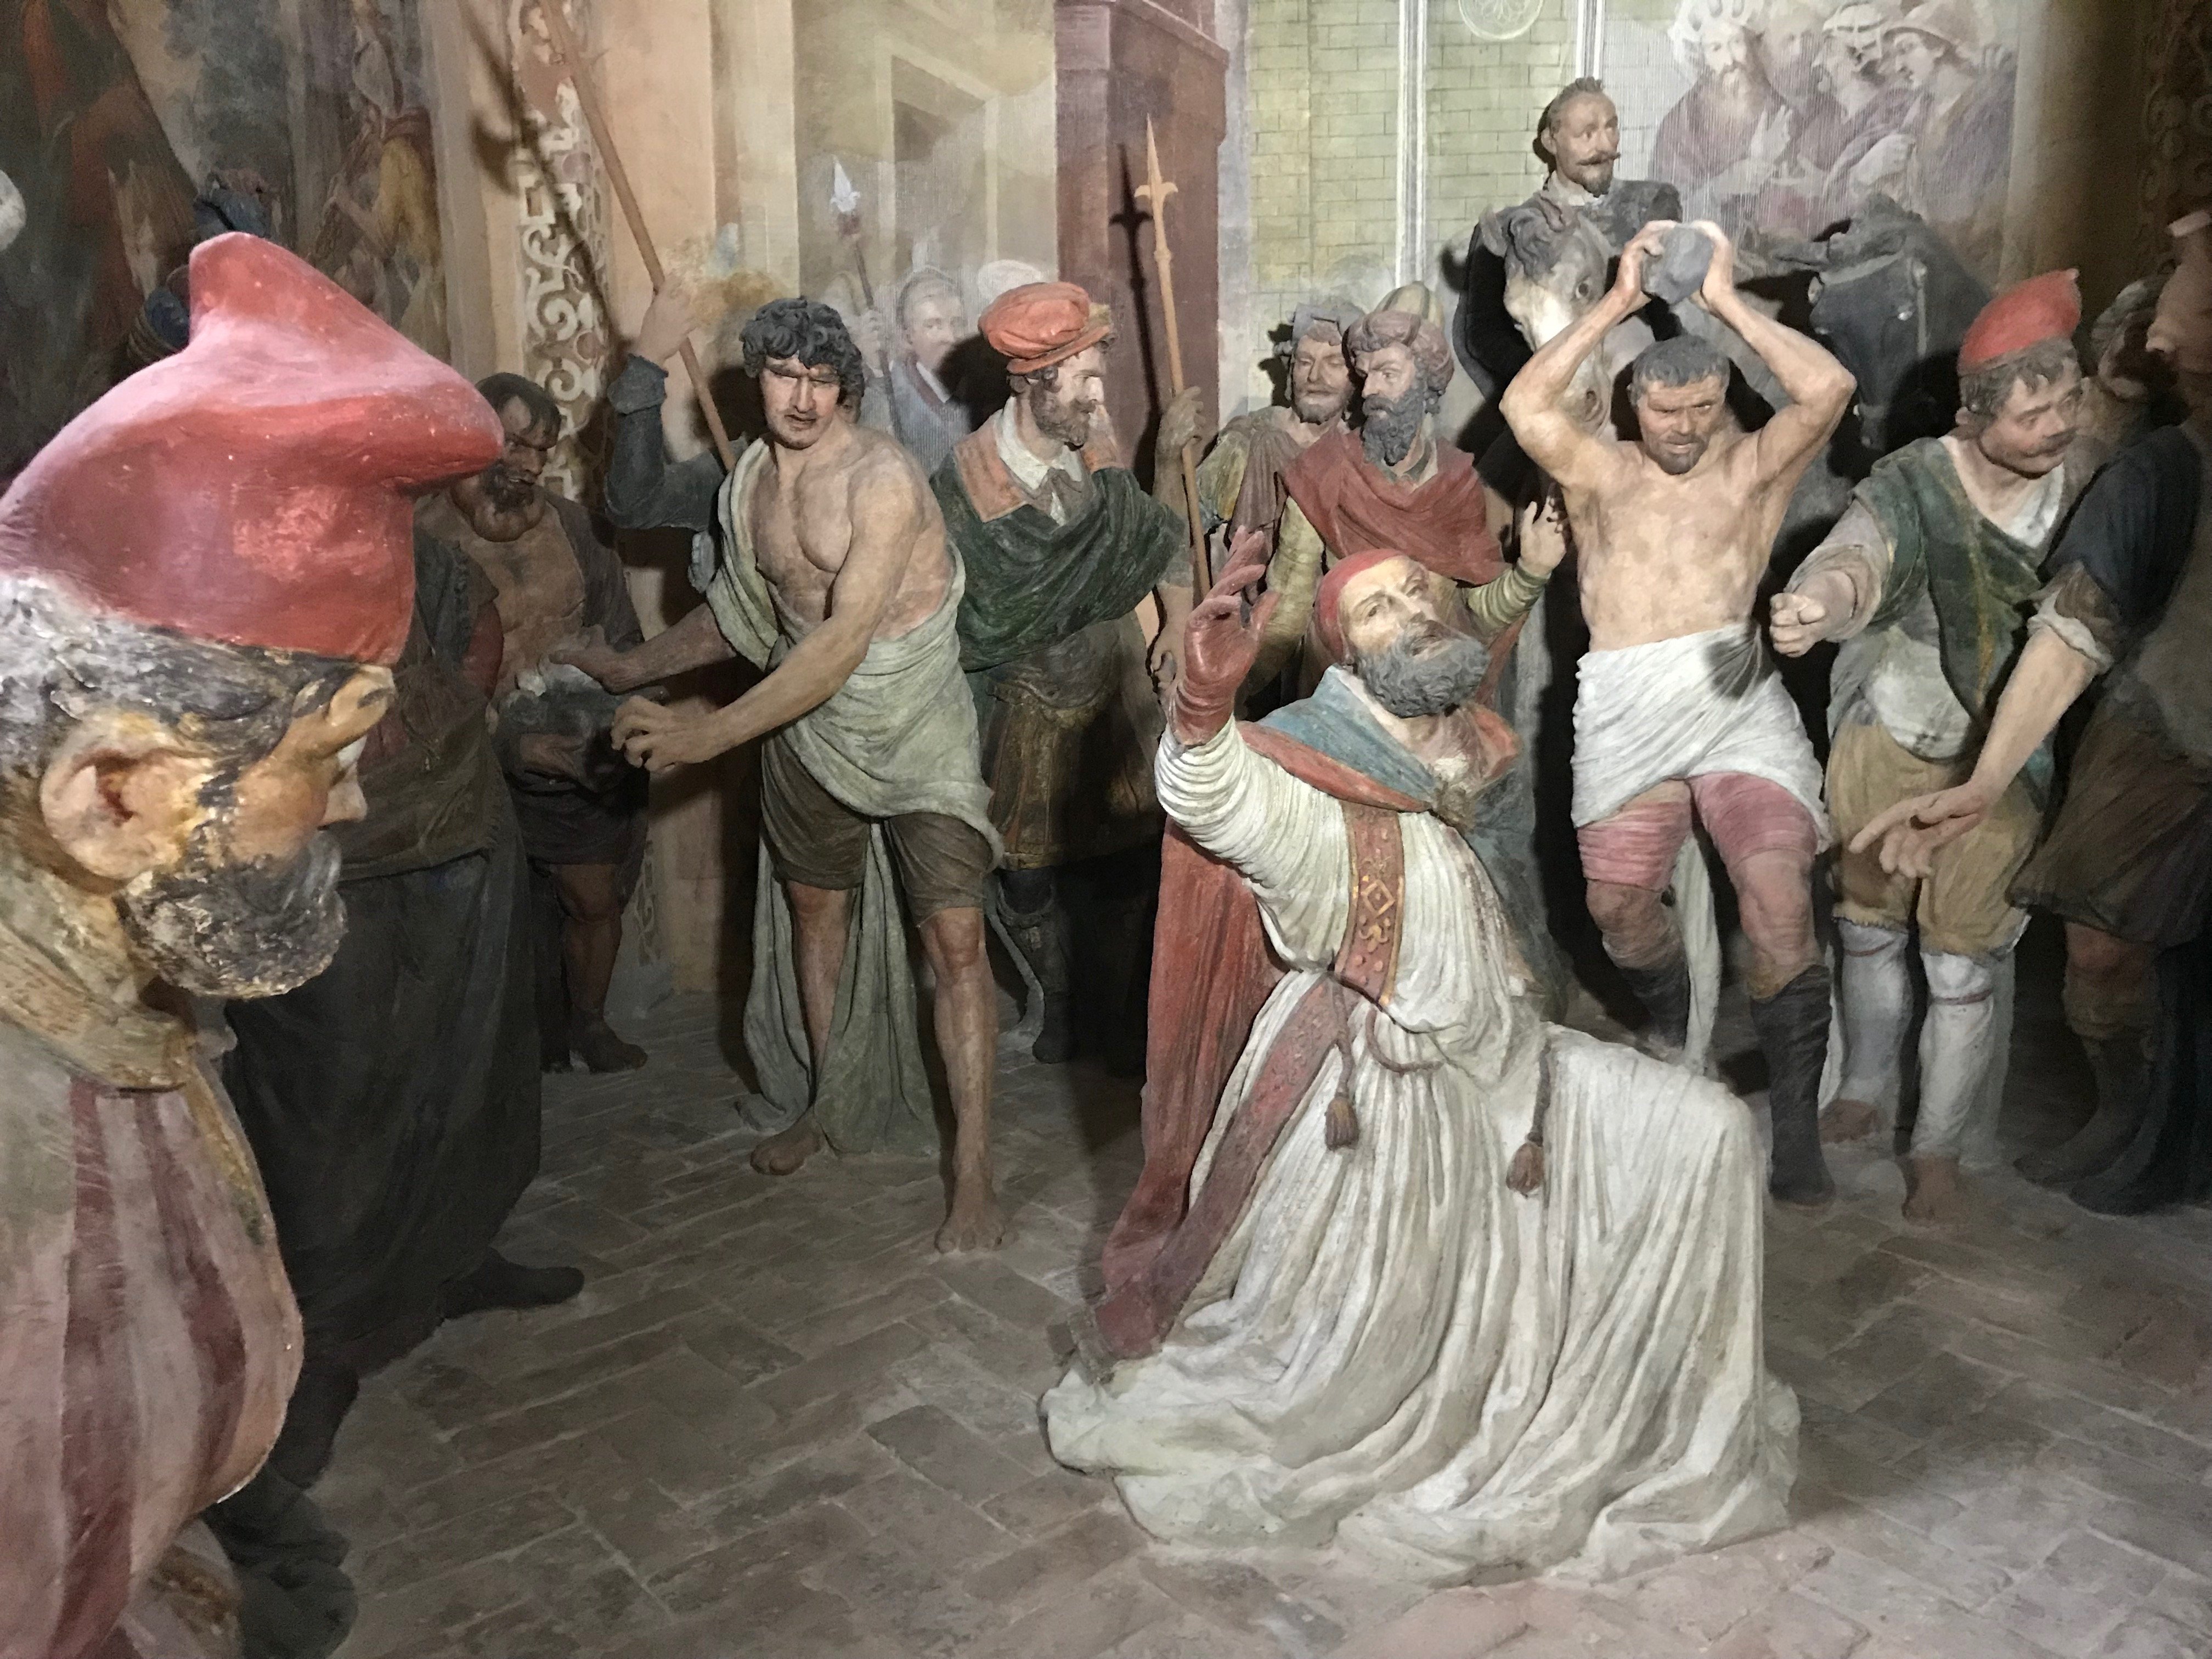 Torna all’antico splendore la cappella “Il martirio di Sant’Eusebio” a Crea